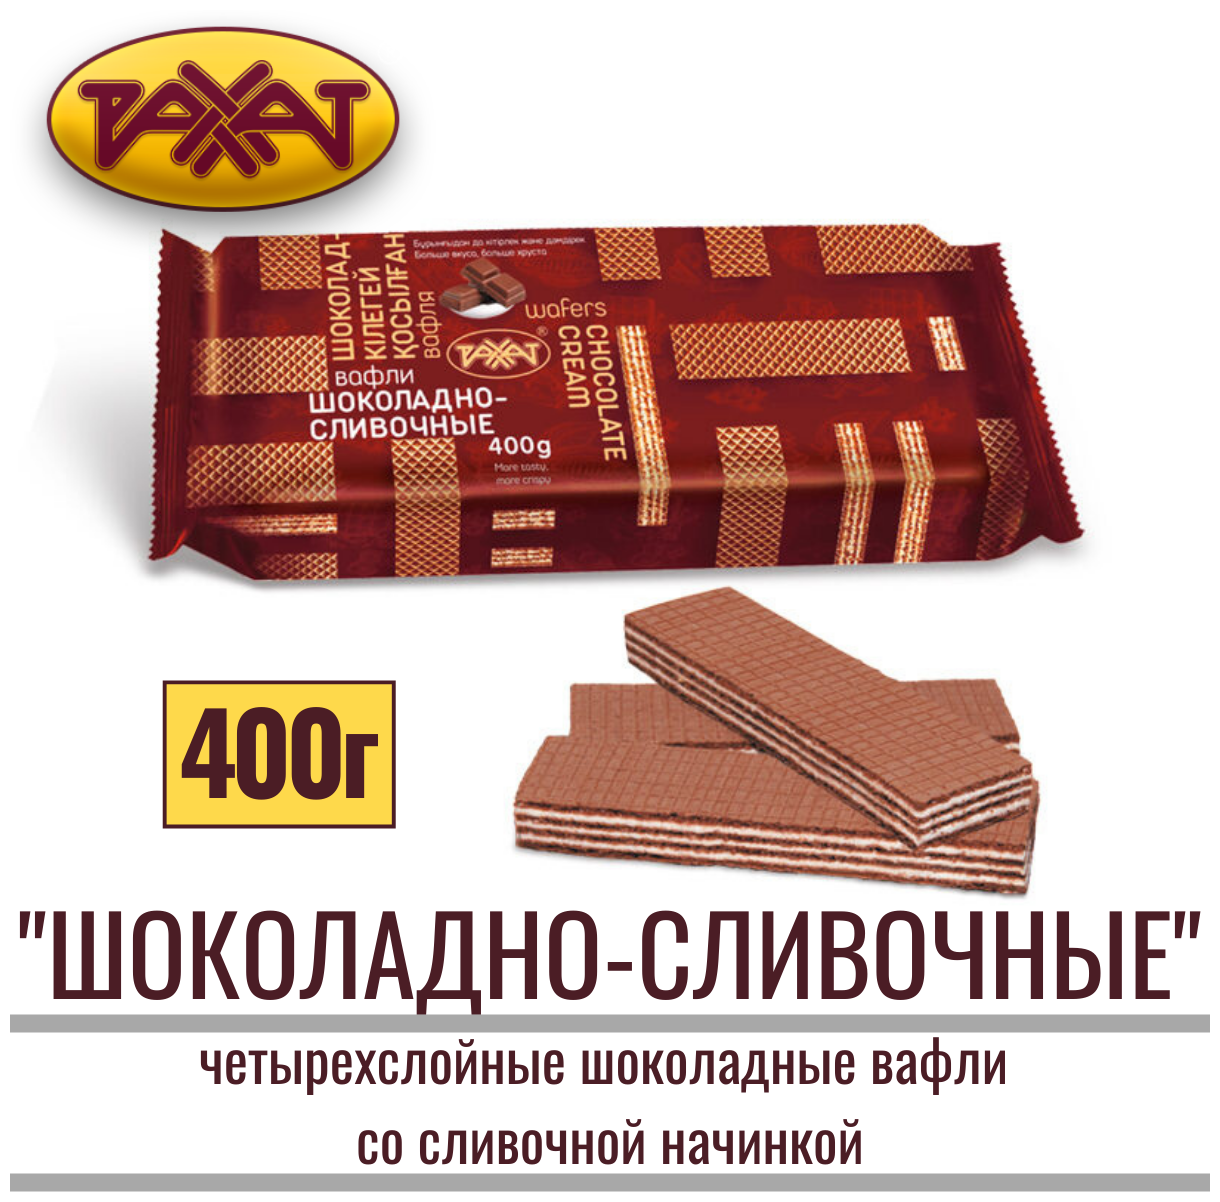 Вафли "рахат шоколадно - сливочные" шоколадные со сливочной начинкой, 400 г